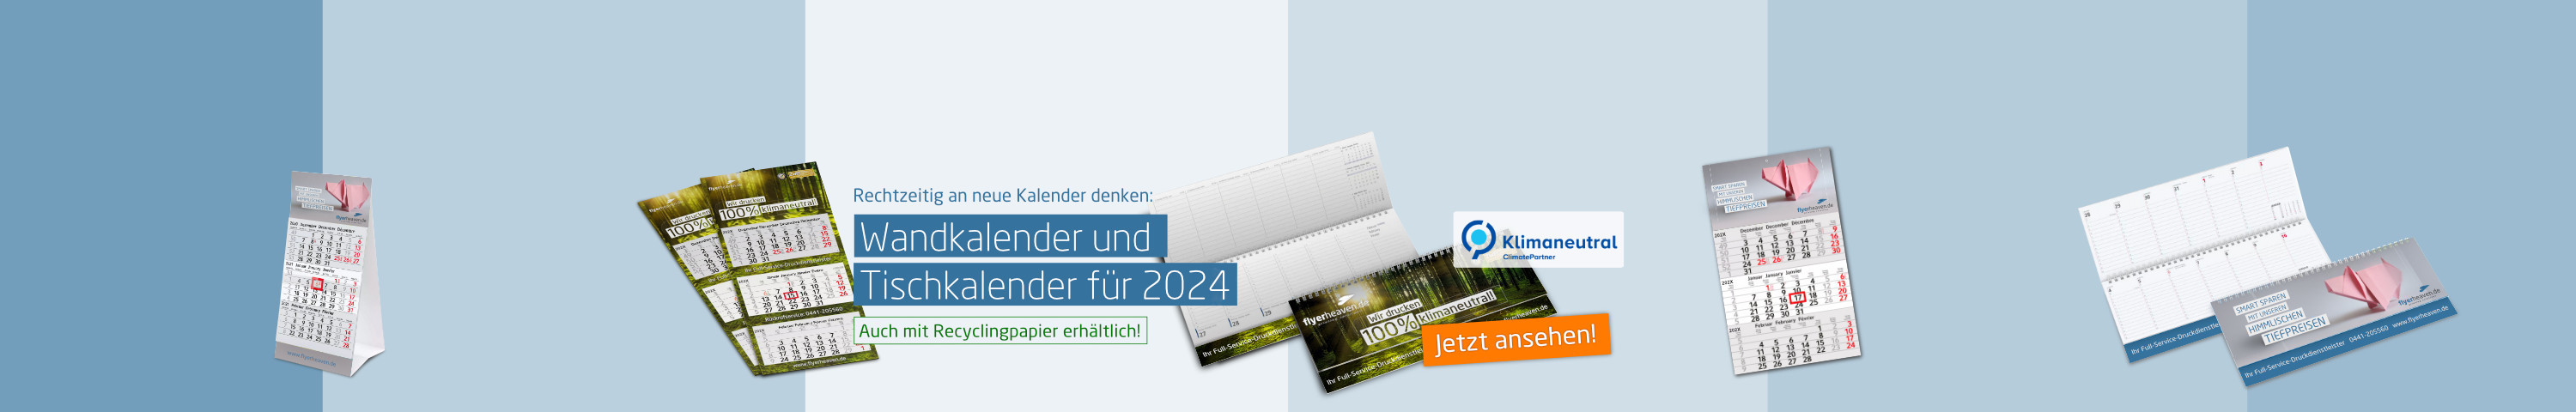 Ab sofort wieder verfügbar: Wandkalender und  Tischkalender für 2022 - auch mit Recyclingpapier erhältlich!